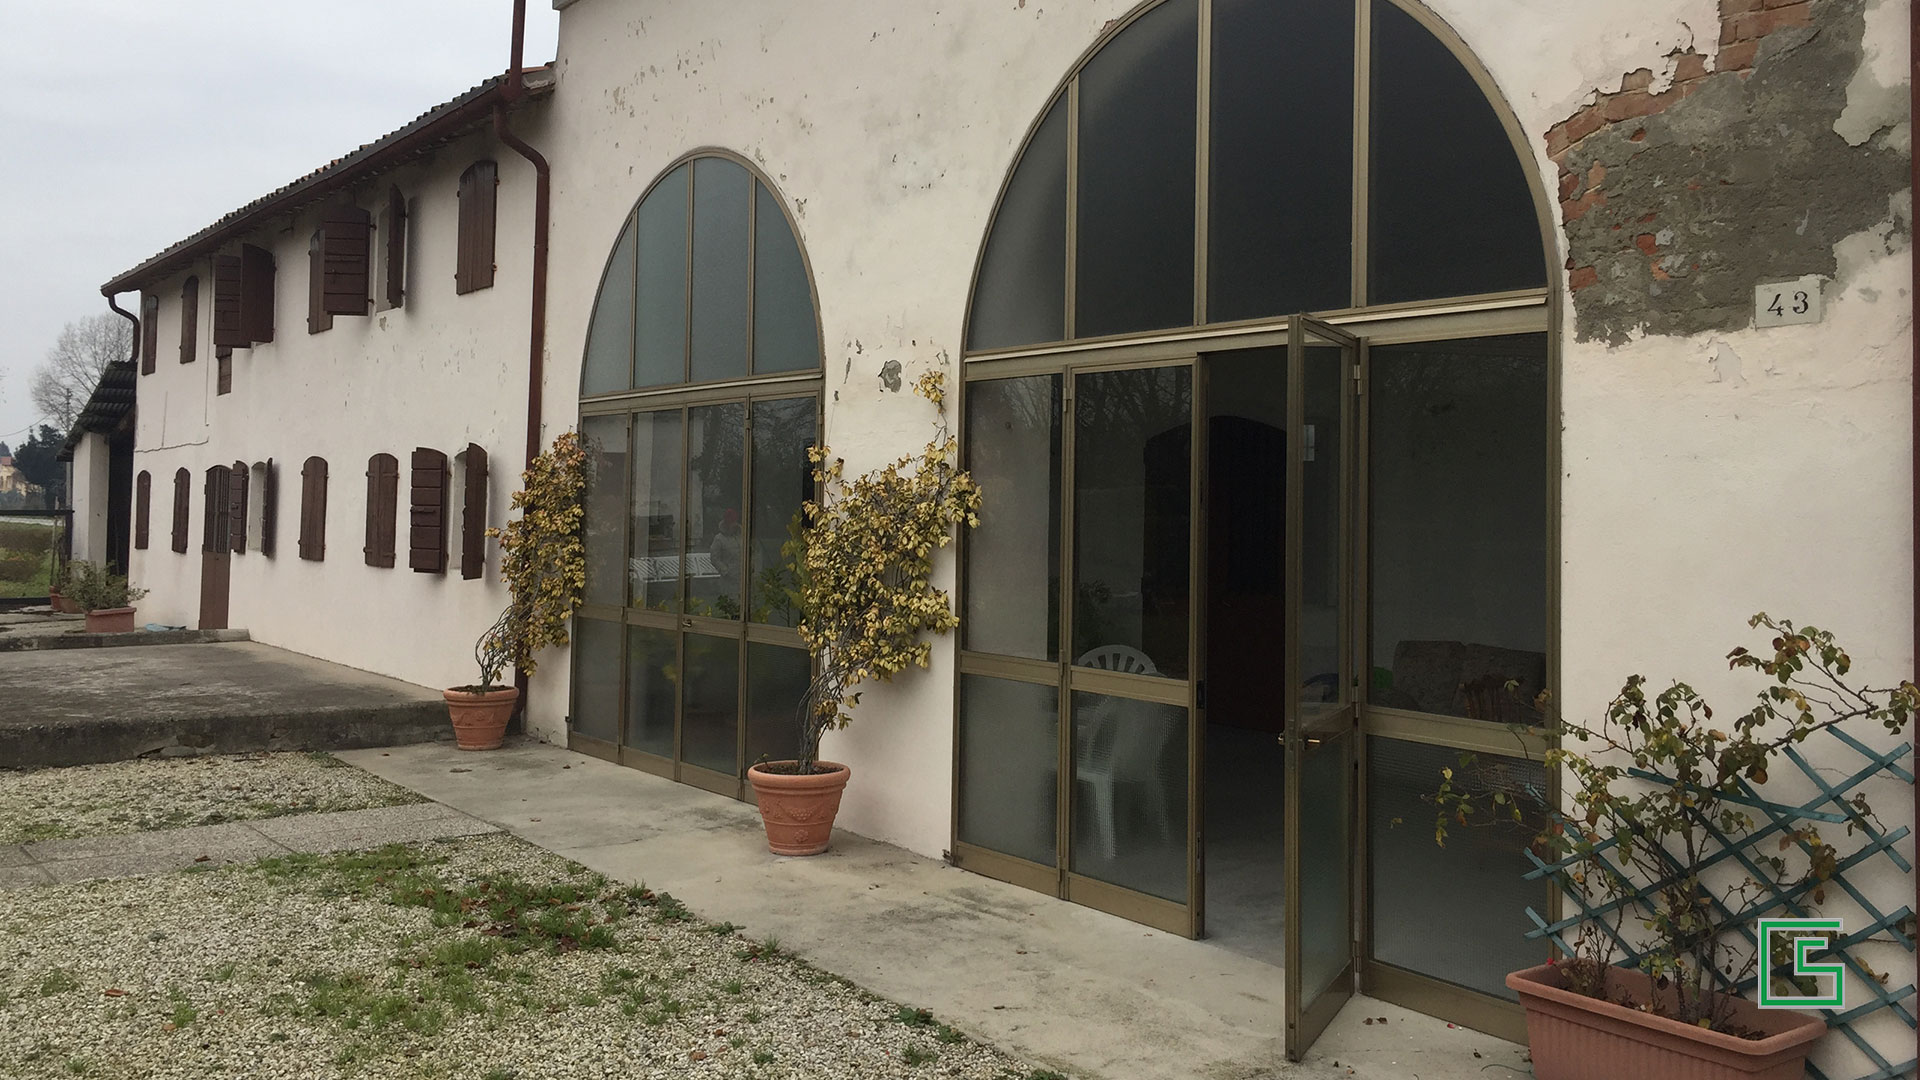 Fabbricato rurale Padova Ristrutturazione con parziale demolizione e ricostruzione studio tecnico geometra Schiavon